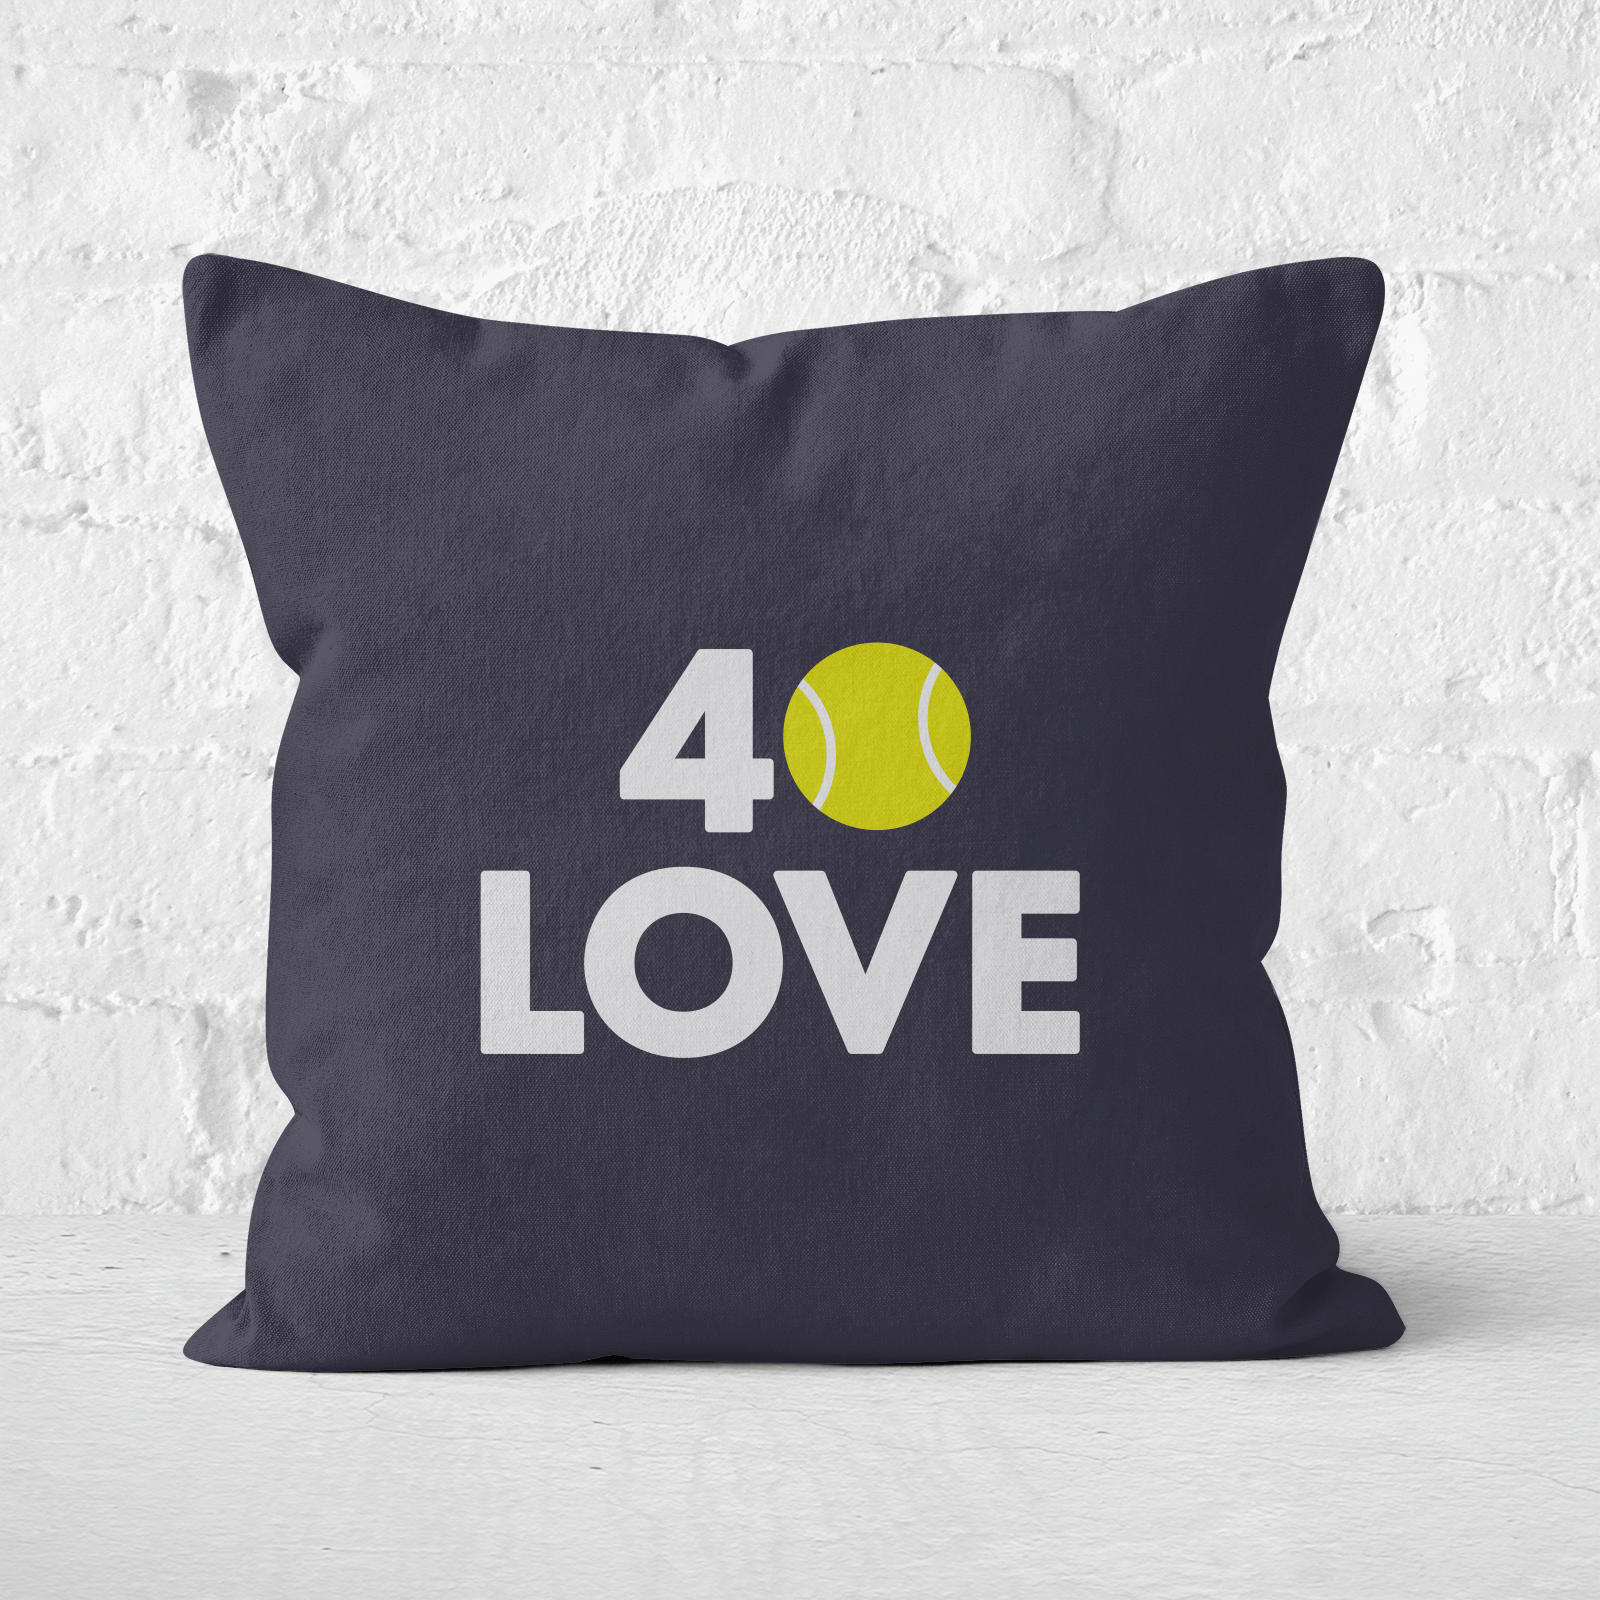 40 Love Square Cushion   60x60cm   Soft Touch